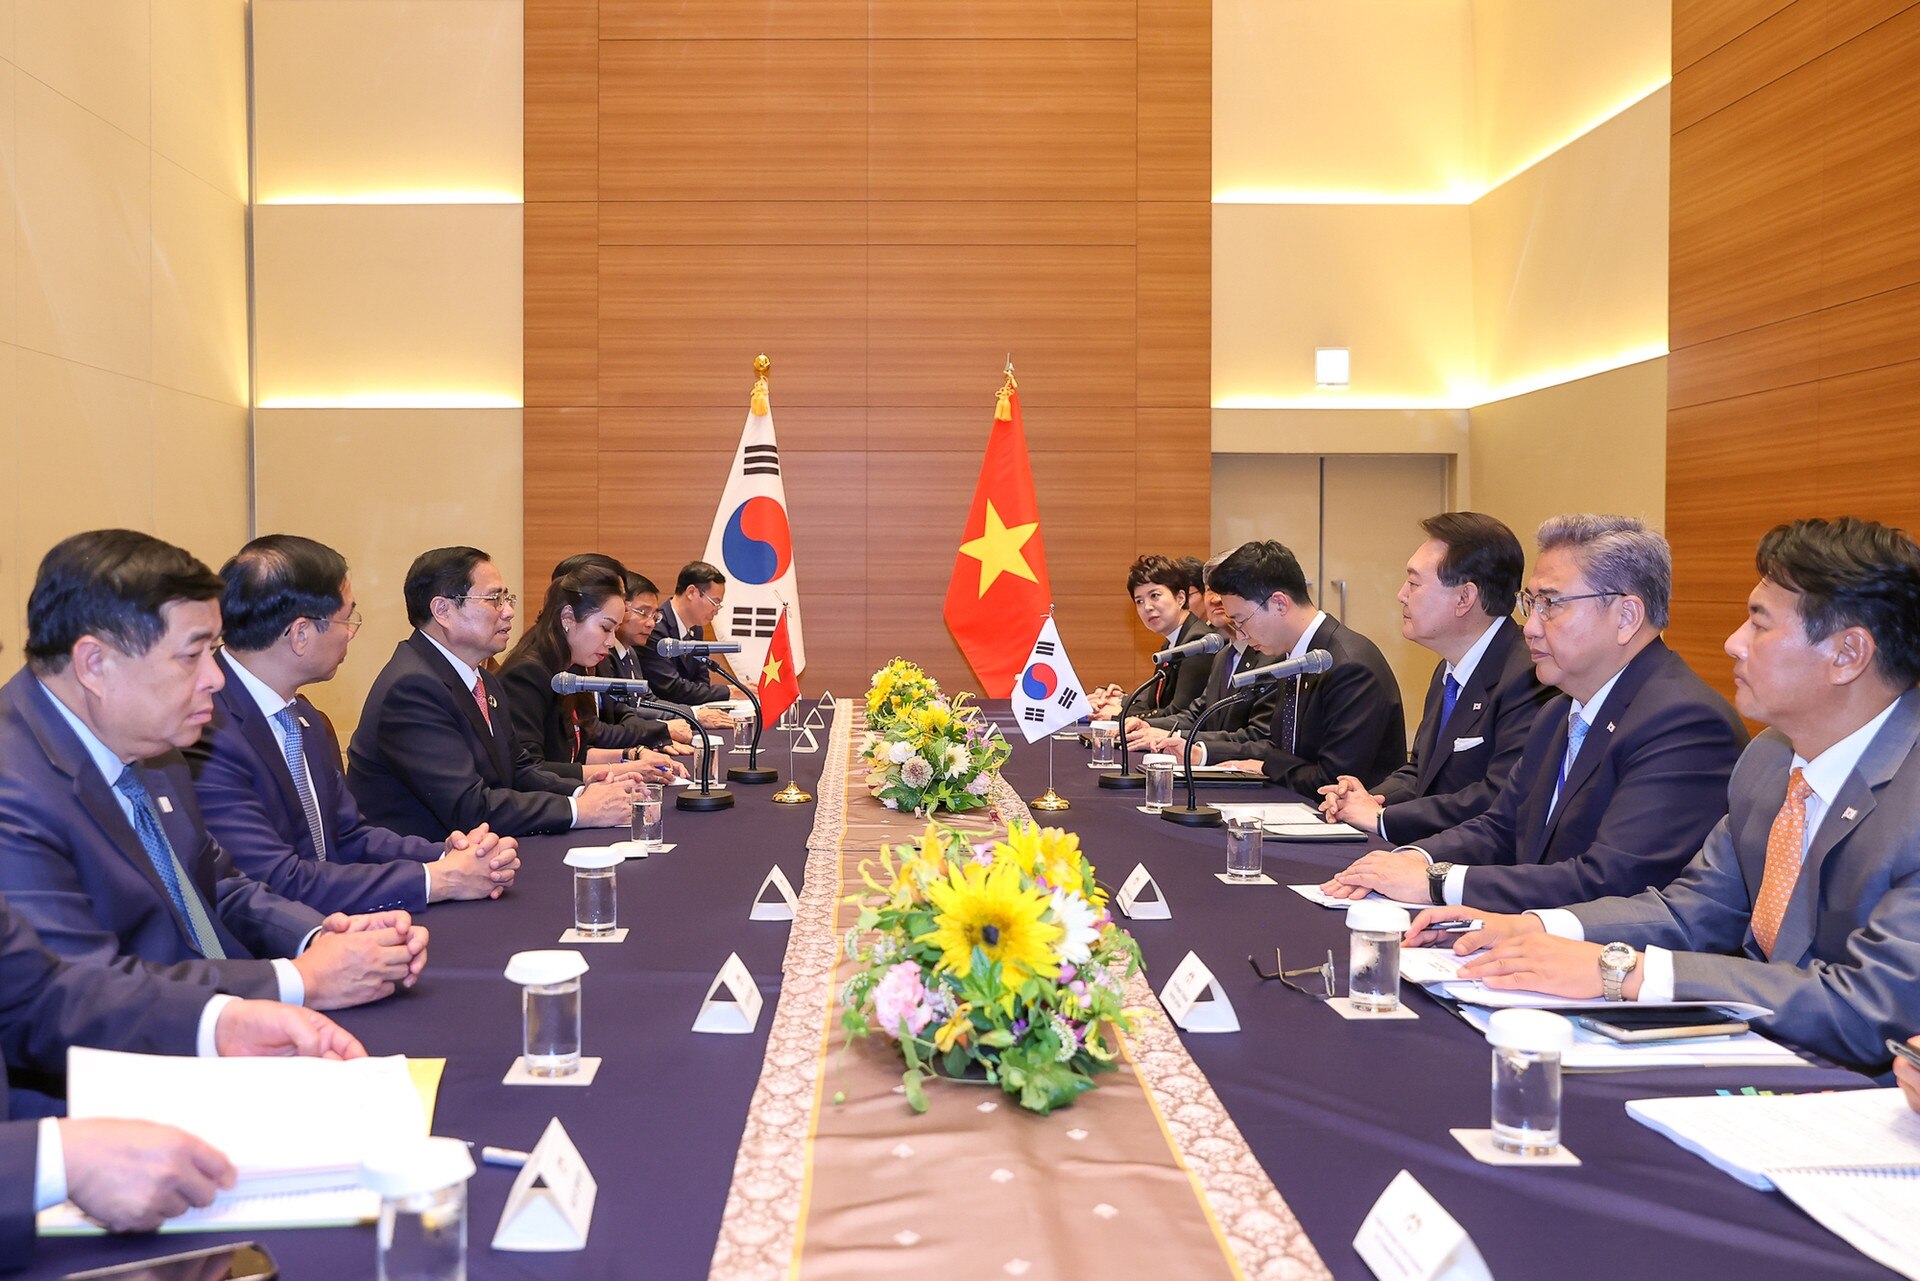 นายกรัฐมนตรี ฝ่ามมิงห์จิญ พบกับประธานาธิบดีแห่งสาธารณรัฐเกาหลี เนื่องในโอกาสขยายการประชุมสุดยอด G7 - รูปที่ 2